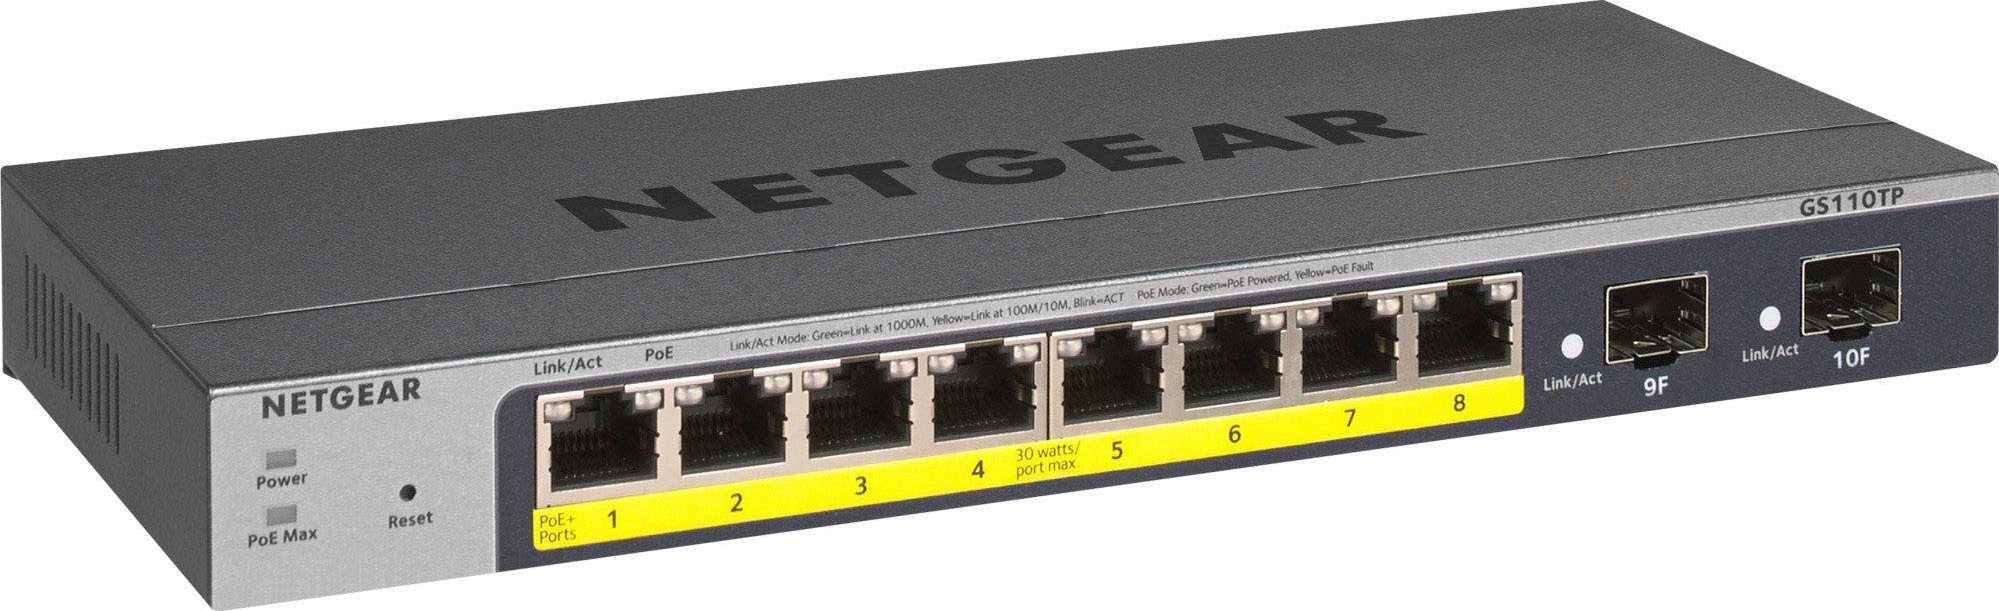 NETGEAR WLAN-Router »Nighthawk XR1000«